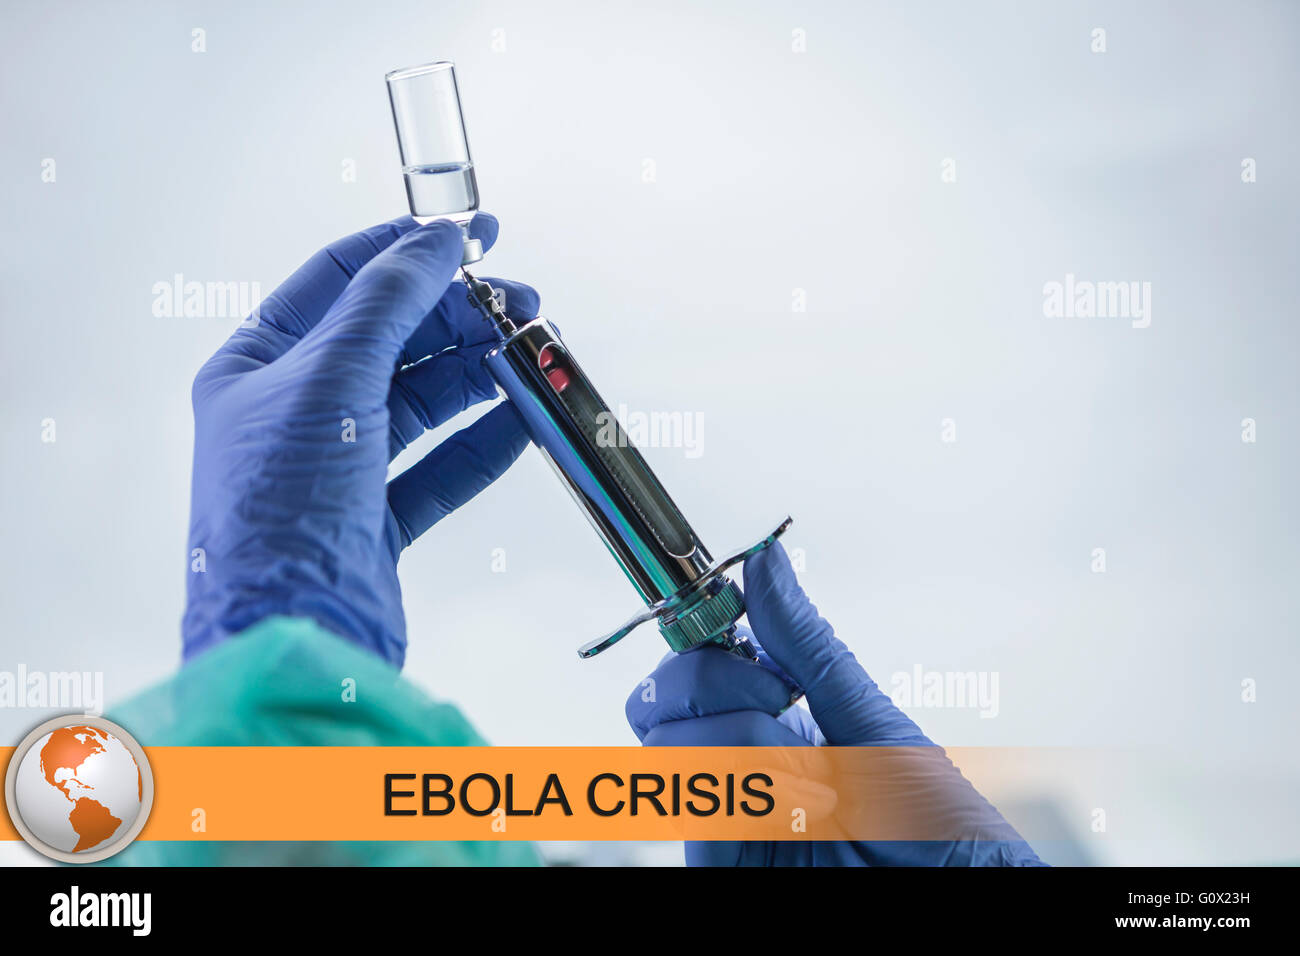 Digital composite de l'Ebola news flash avec l'imagerie médicale Banque D'Images